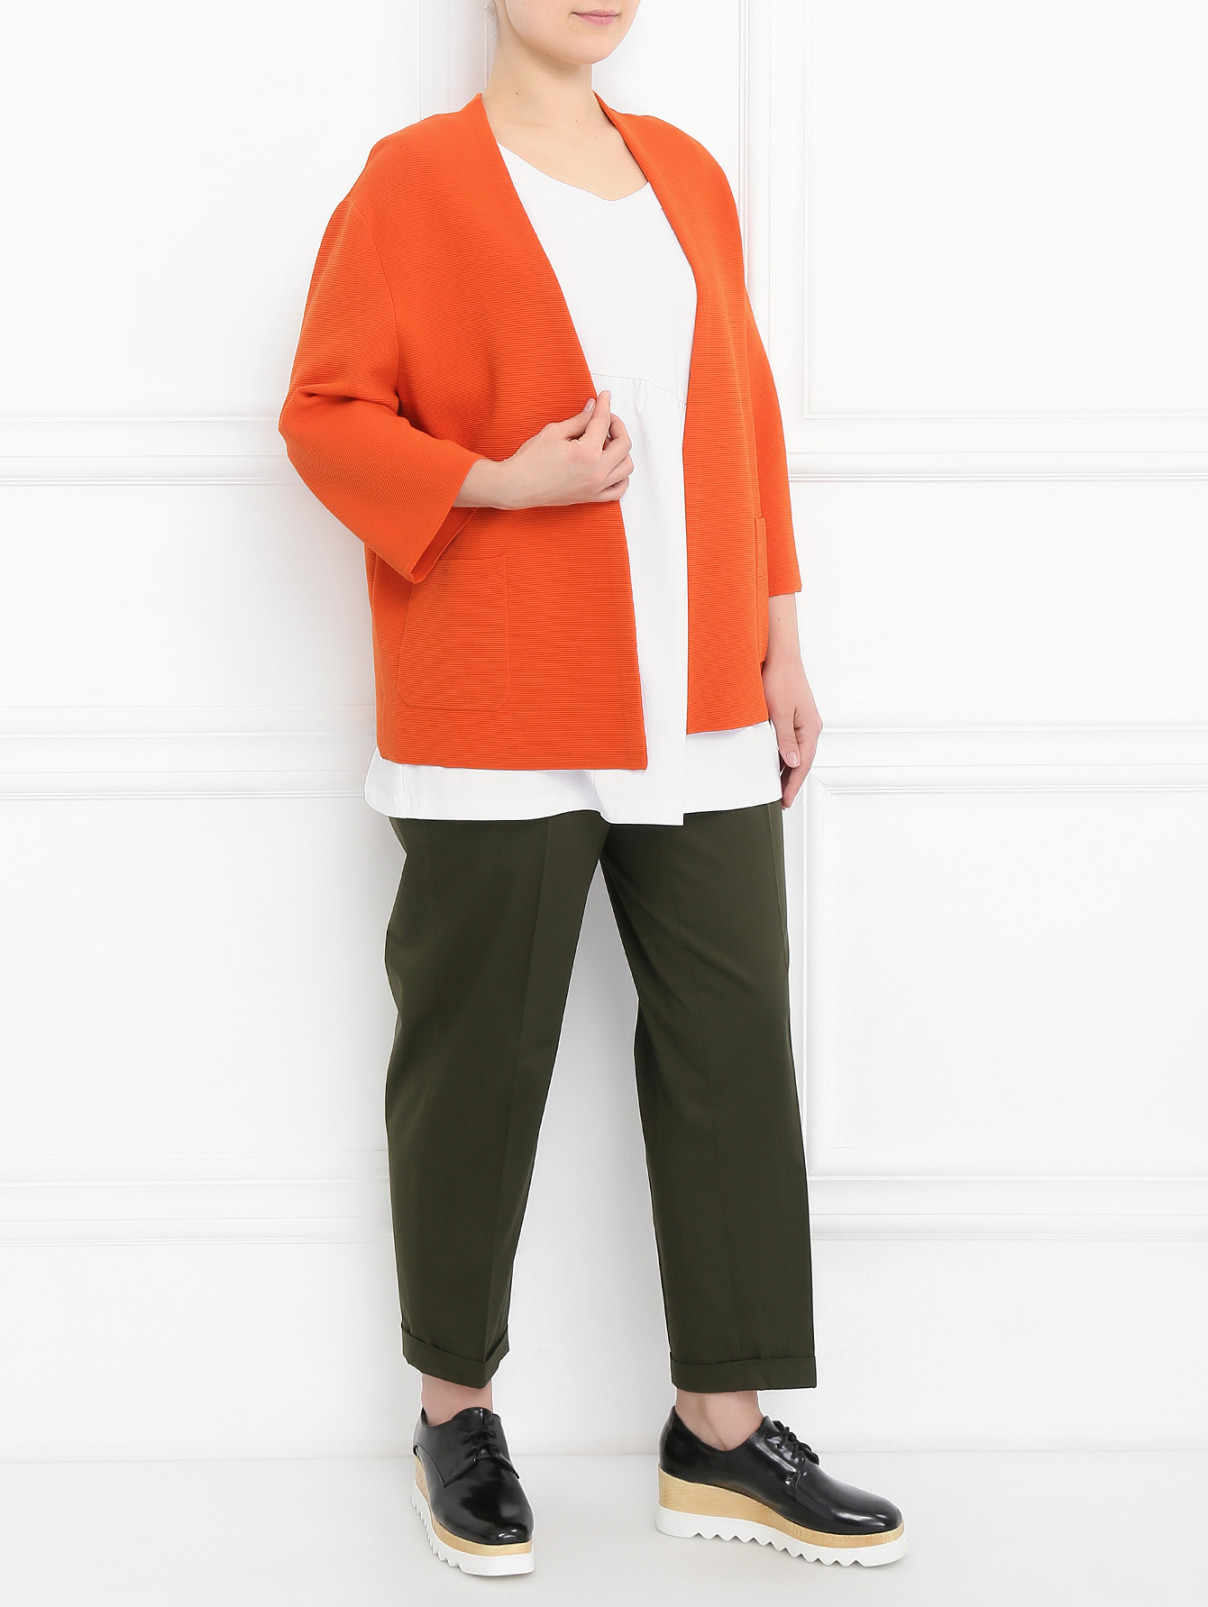 Кардиган с накладными карманами Marina Rinaldi  –  Модель Общий вид  – Цвет:  Оранжевый